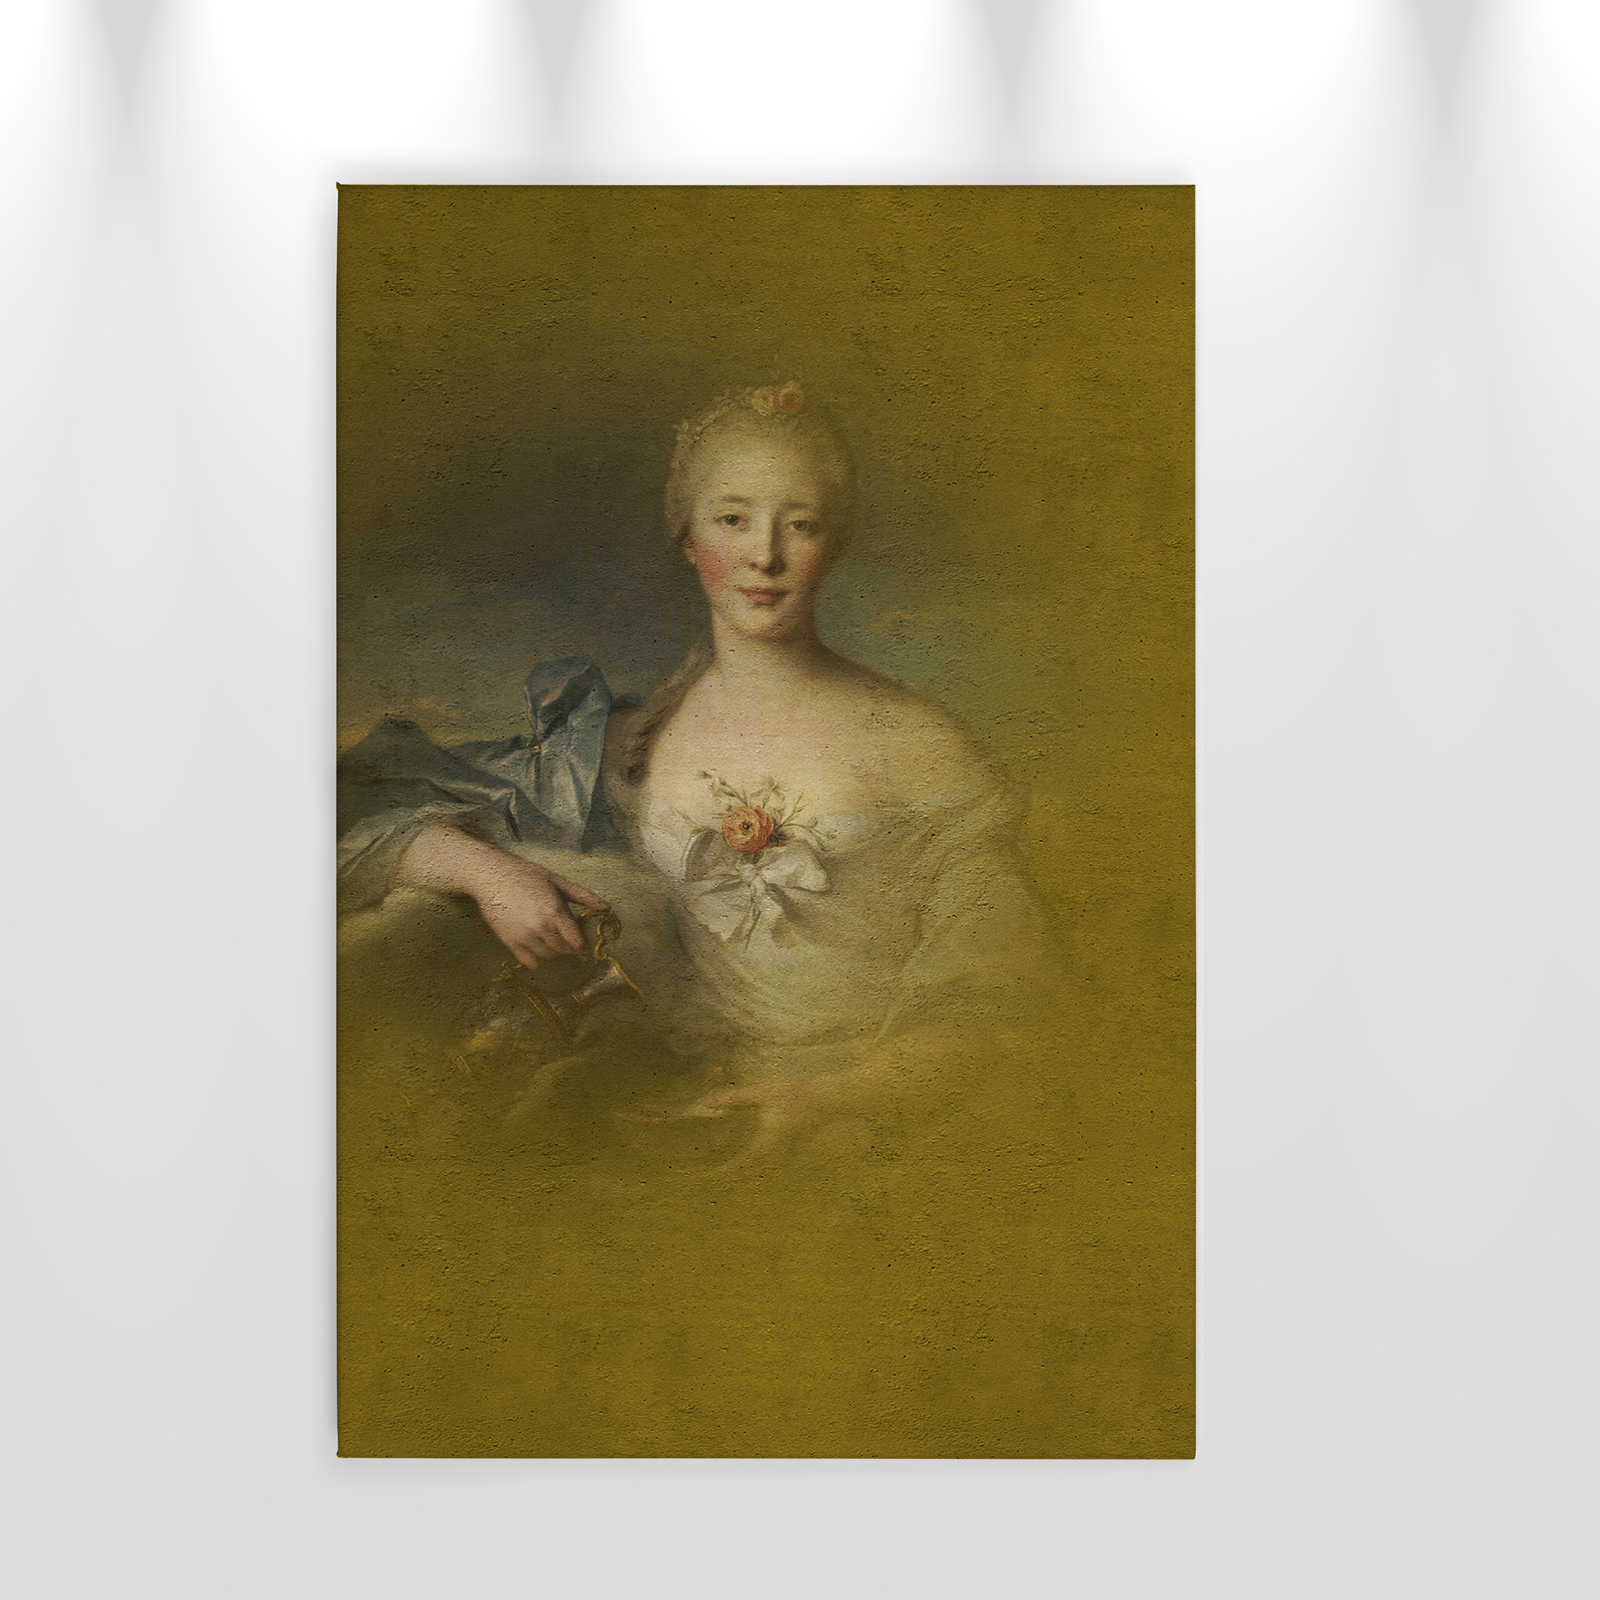             Quadro su tela con ritratto classico di giovane donna - 0,60 m x 0,90 m
        